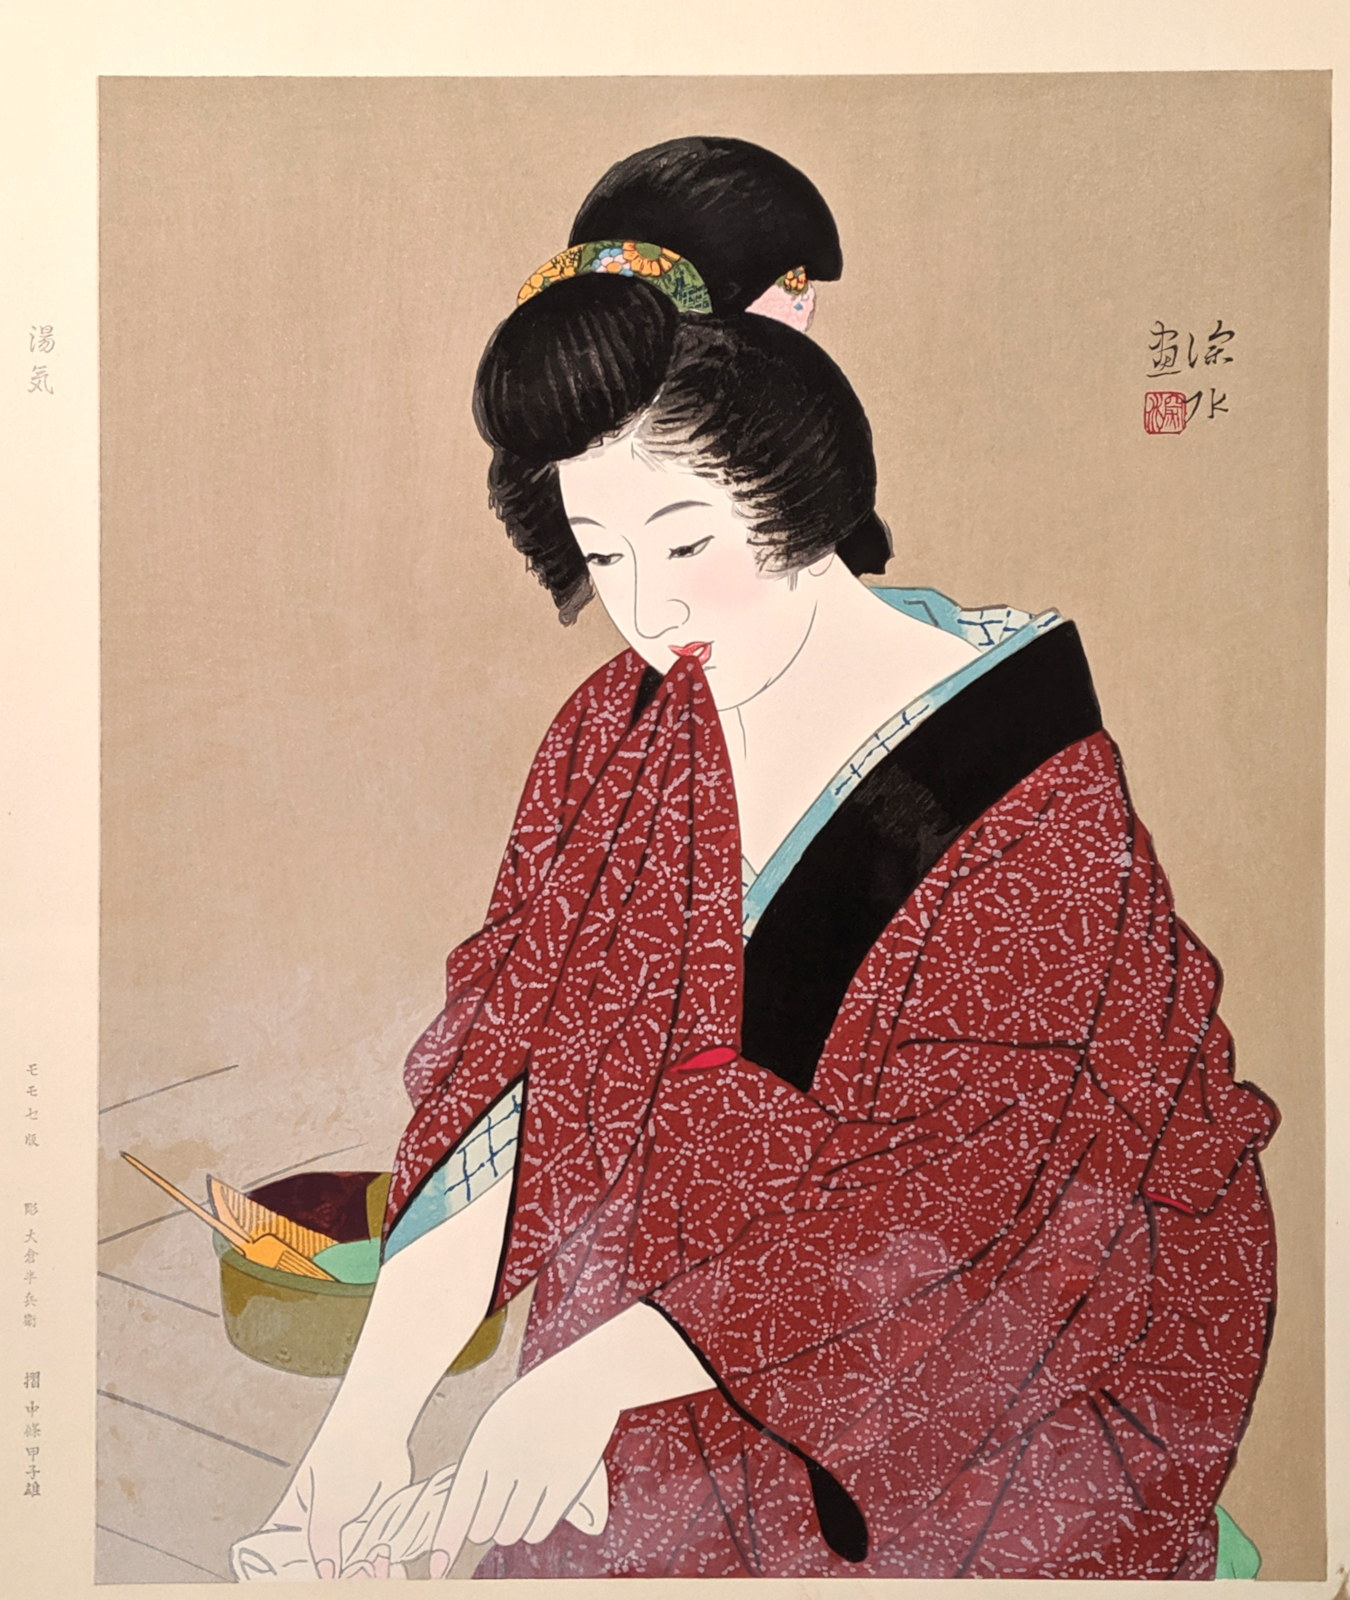 Ito Shinsui Catalogue - Vapor woodblock print